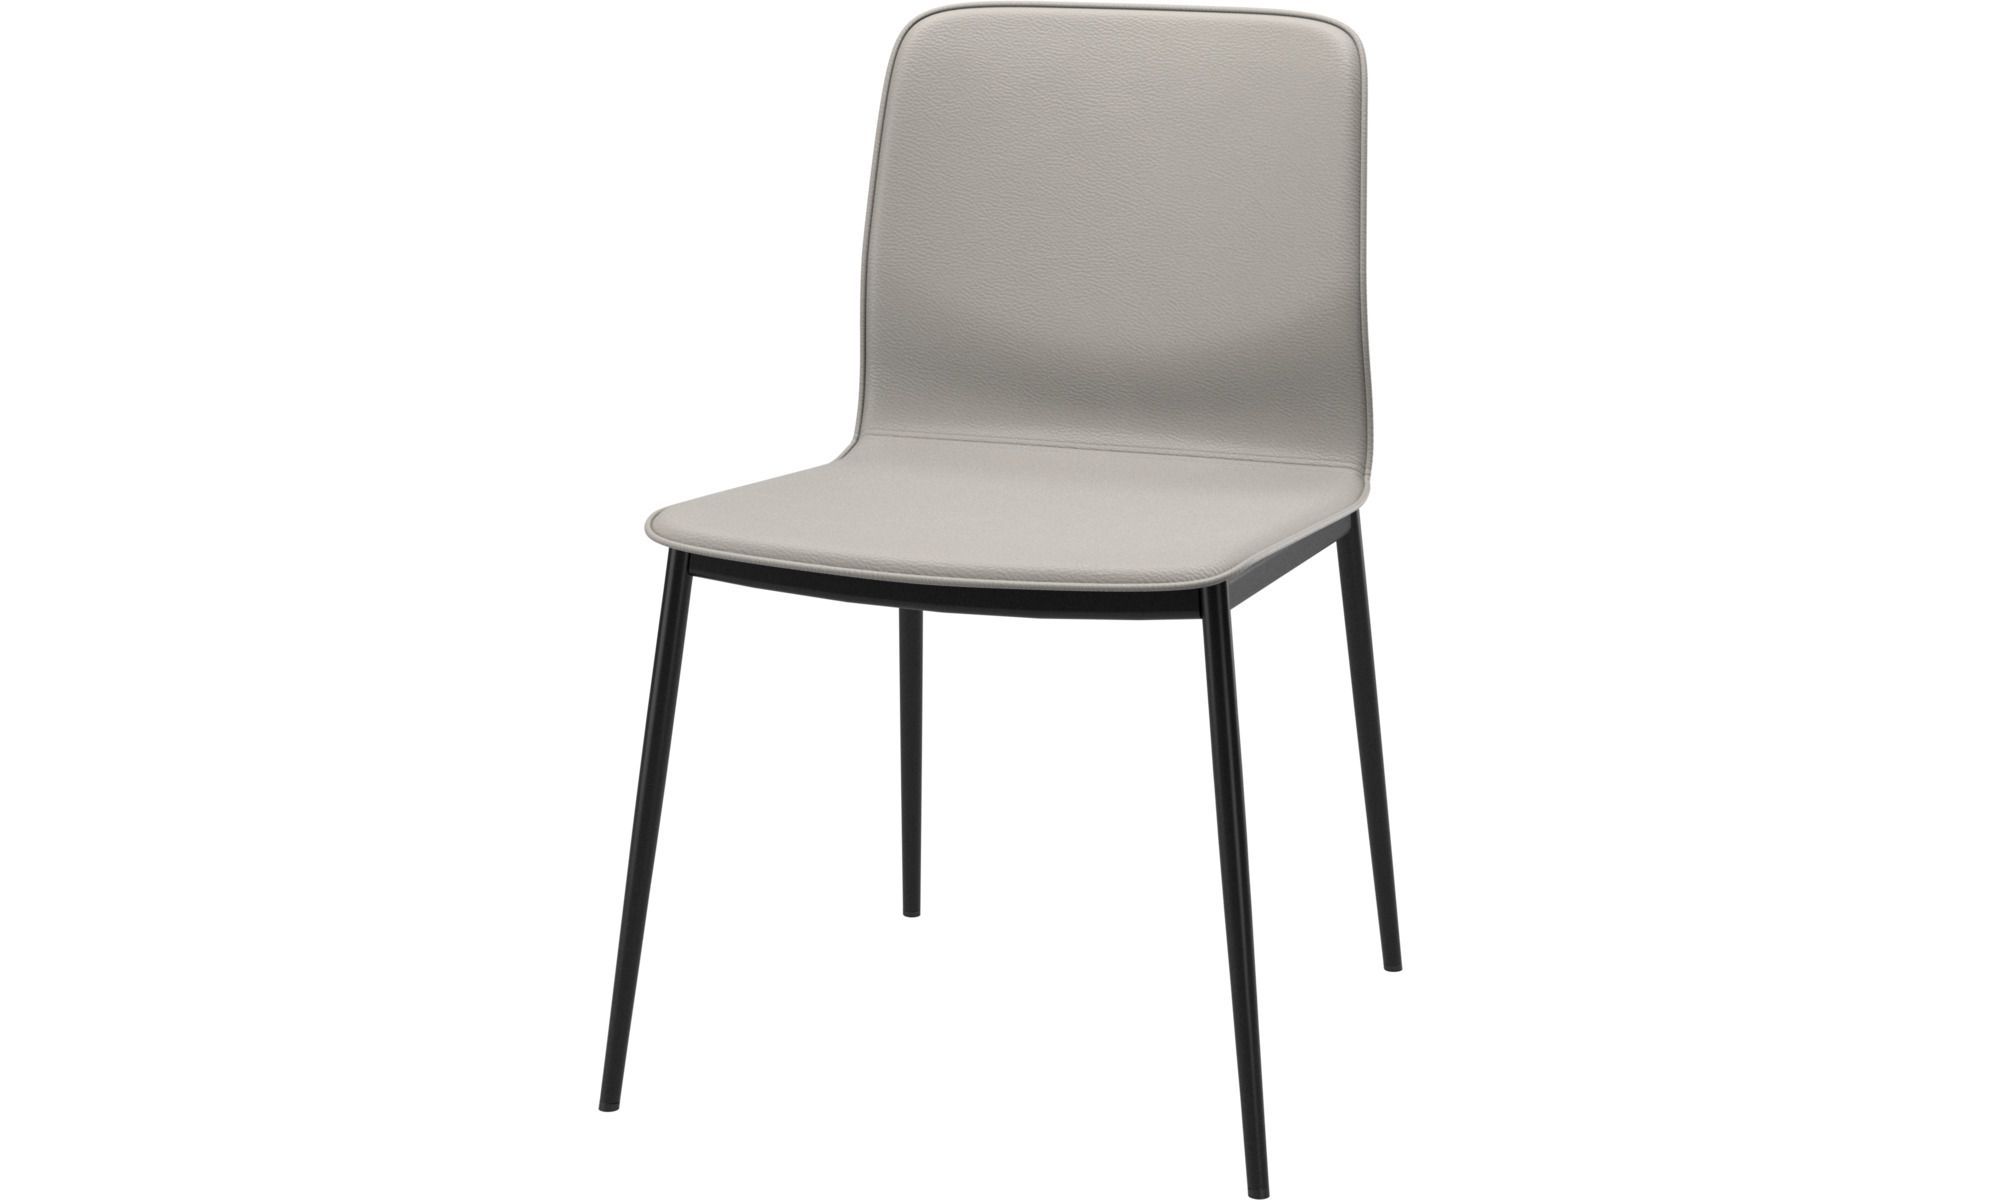 Обеденный стул Newport - Salto  0967 Кожа свето-серого цвета